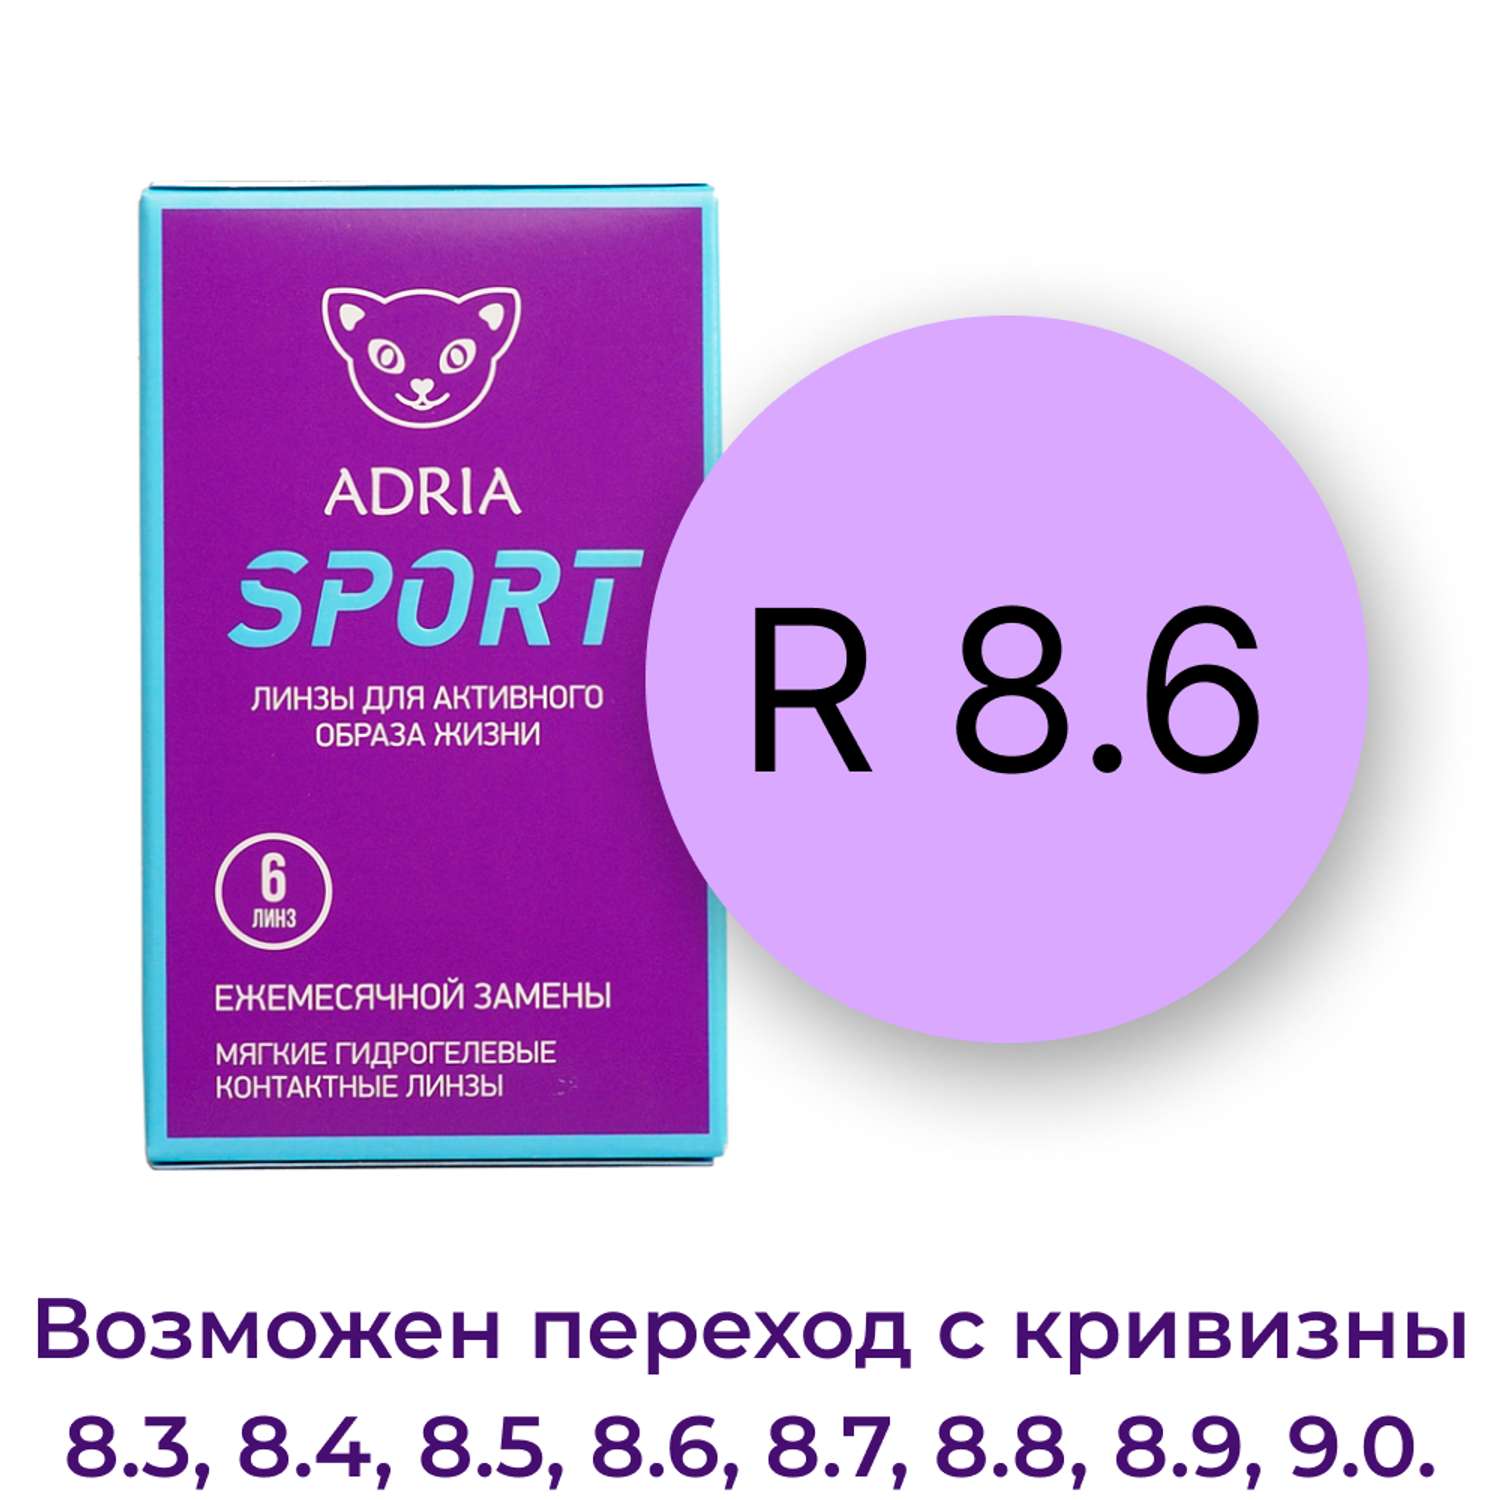 Контактные линзы ADRIA Sport 6 линз R 8.6 -2.00 - фото 3